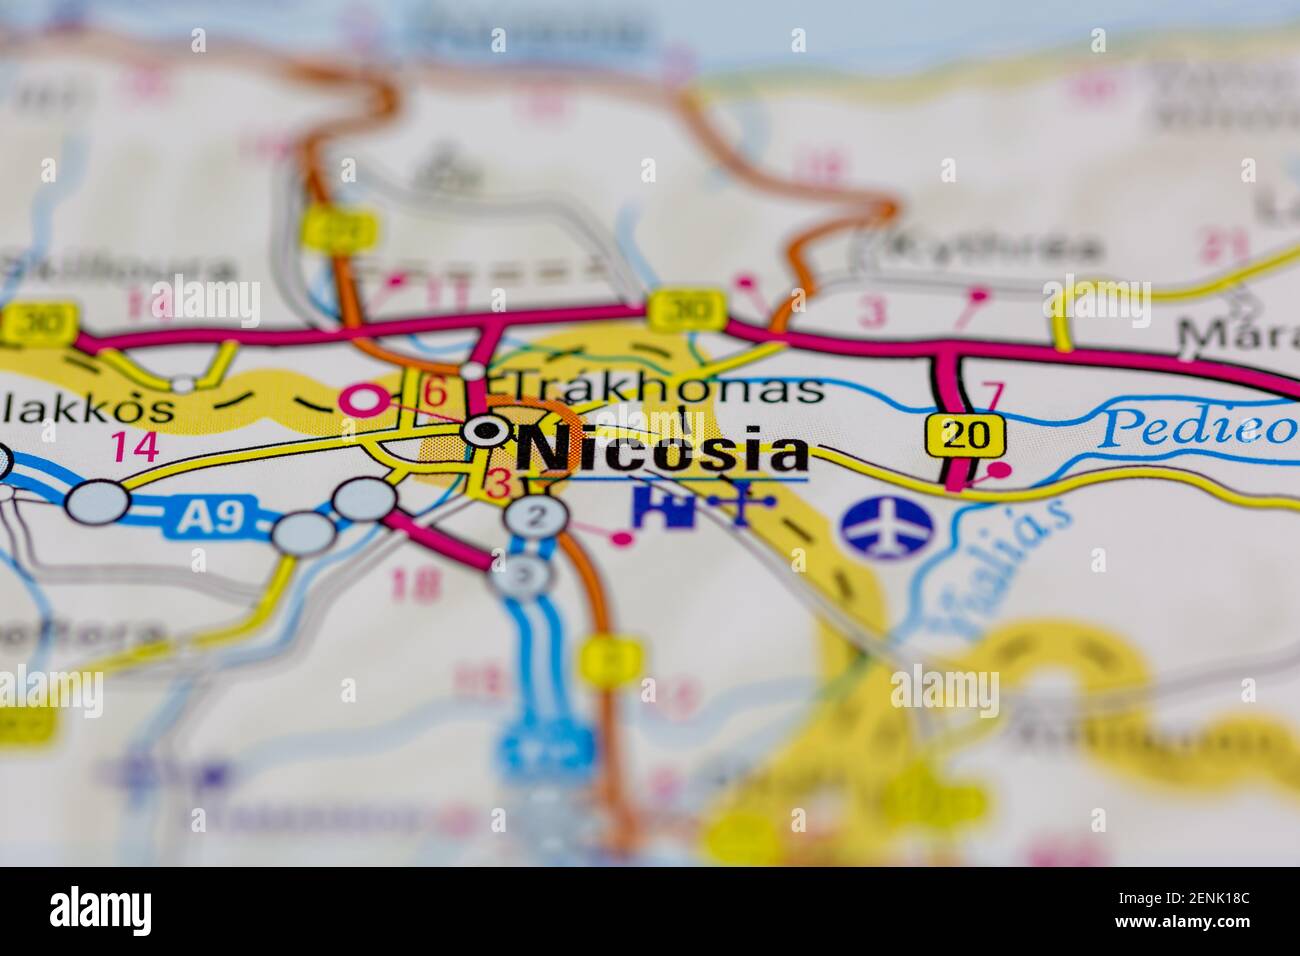 Nicosia Se Muestra En Un Mapa De Carreteras O En Un Mapa Geográfico